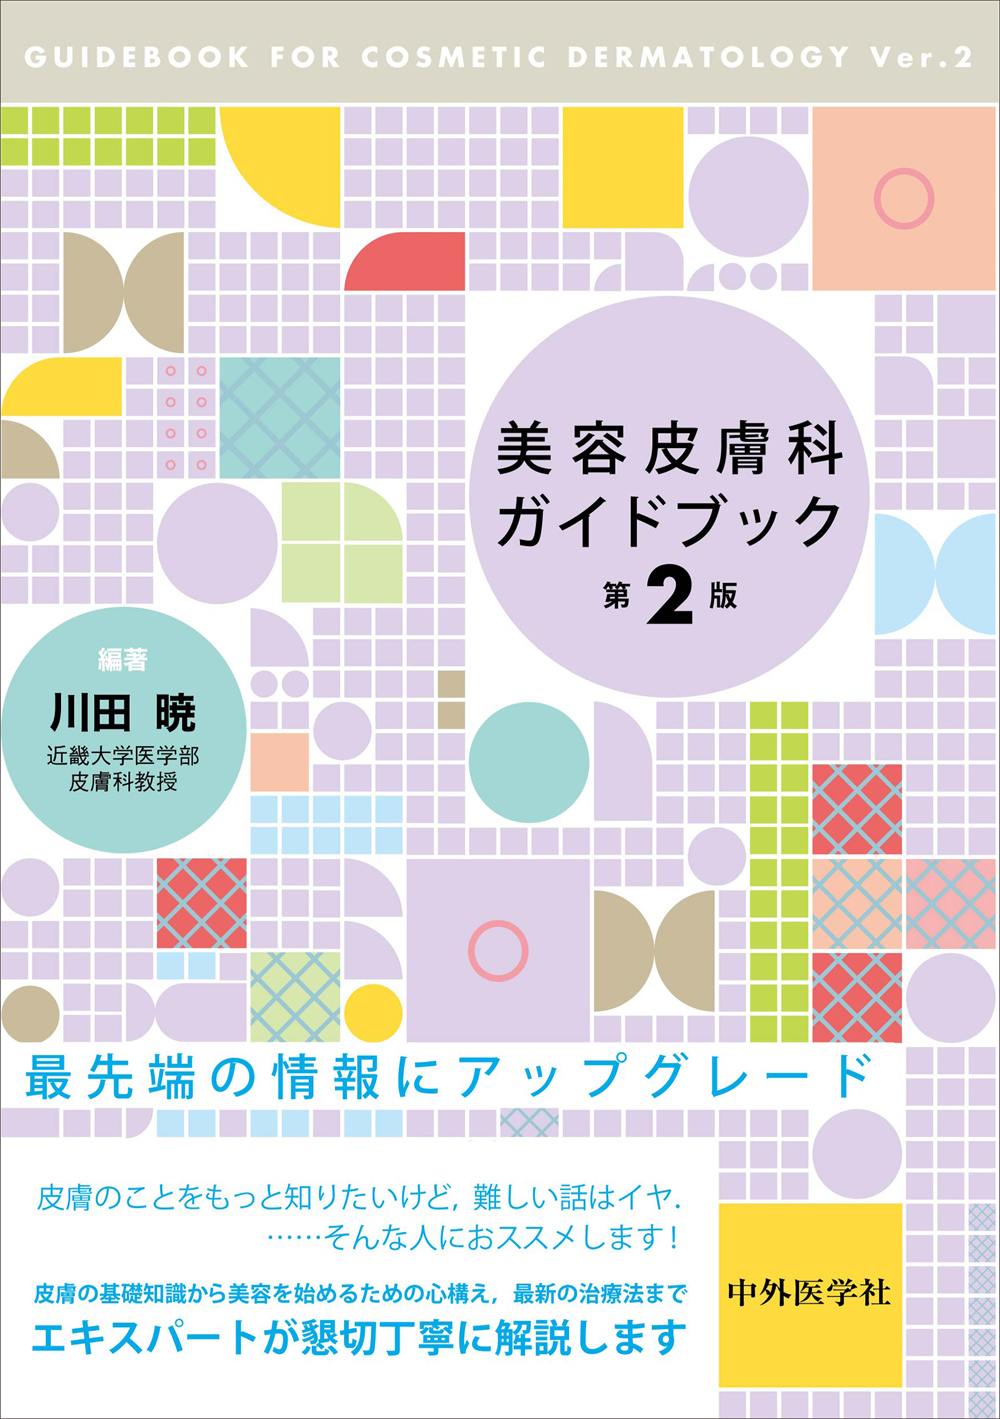 売上値引高 美容皮膚医学BEAUTY #7 Vol.2 No.6( www.themagazine.ca